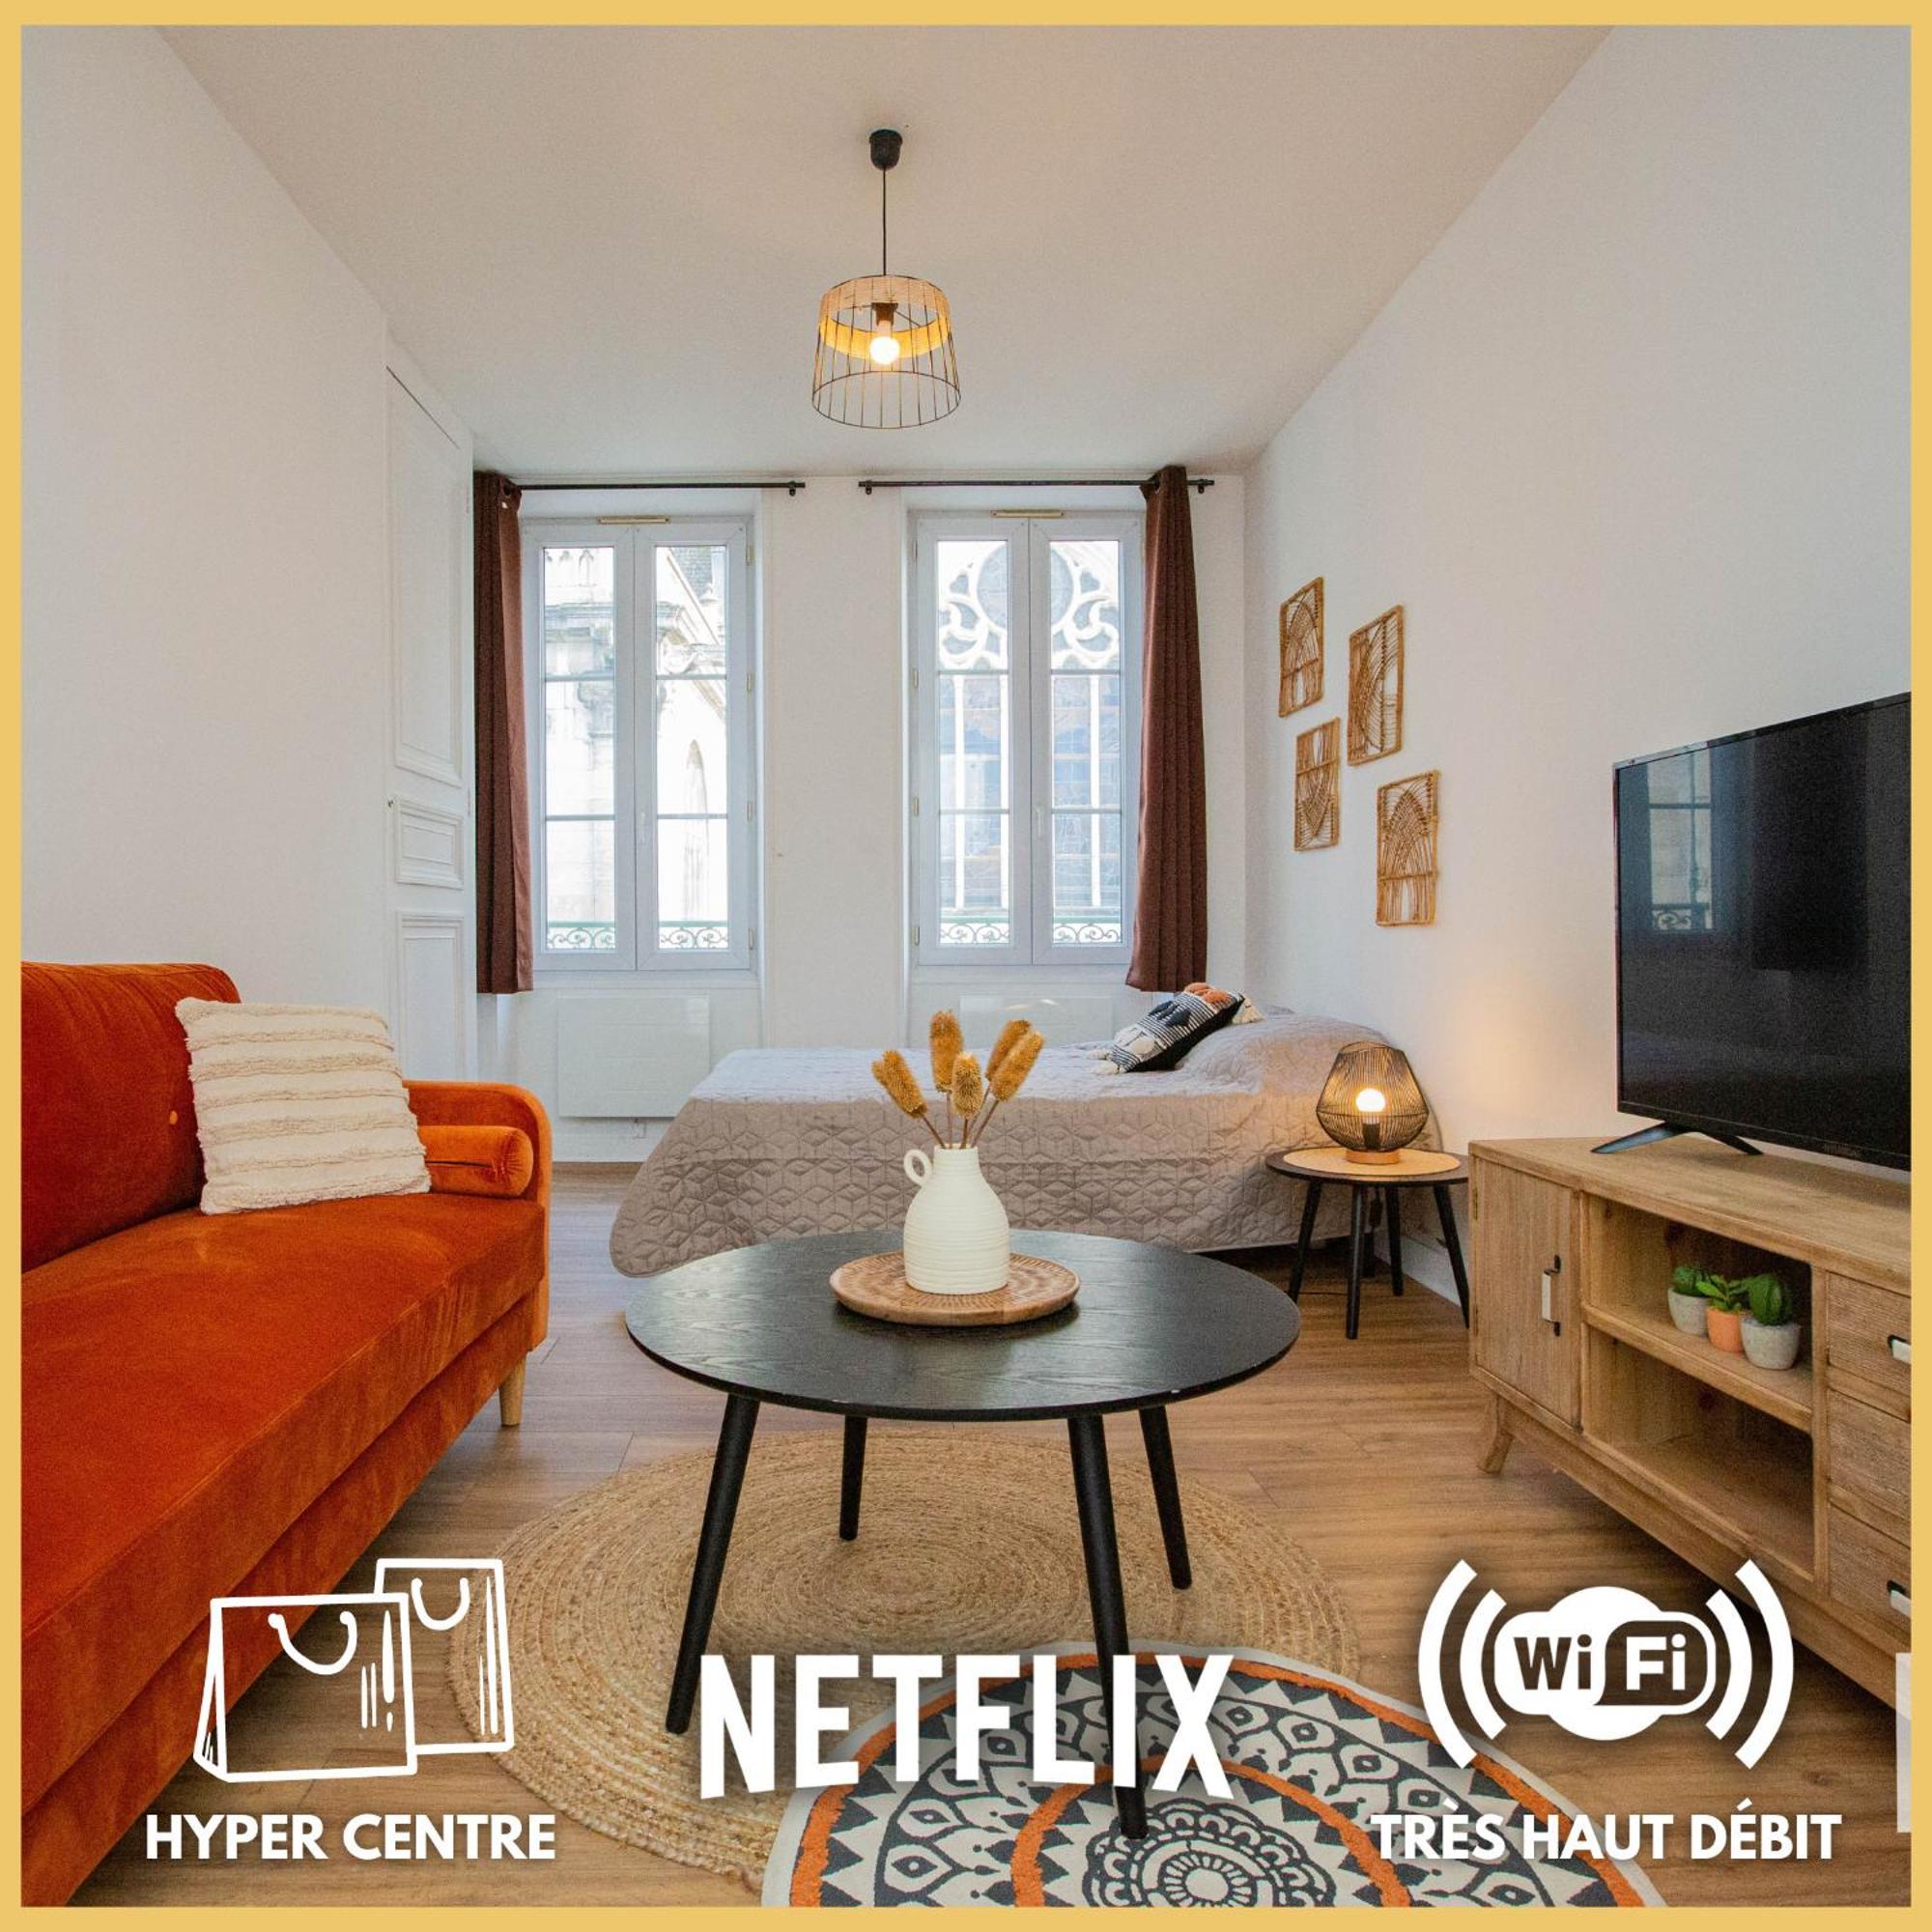 蒙塔日O Centre- Chaleureux - Fibre - Netflix公寓 外观 照片